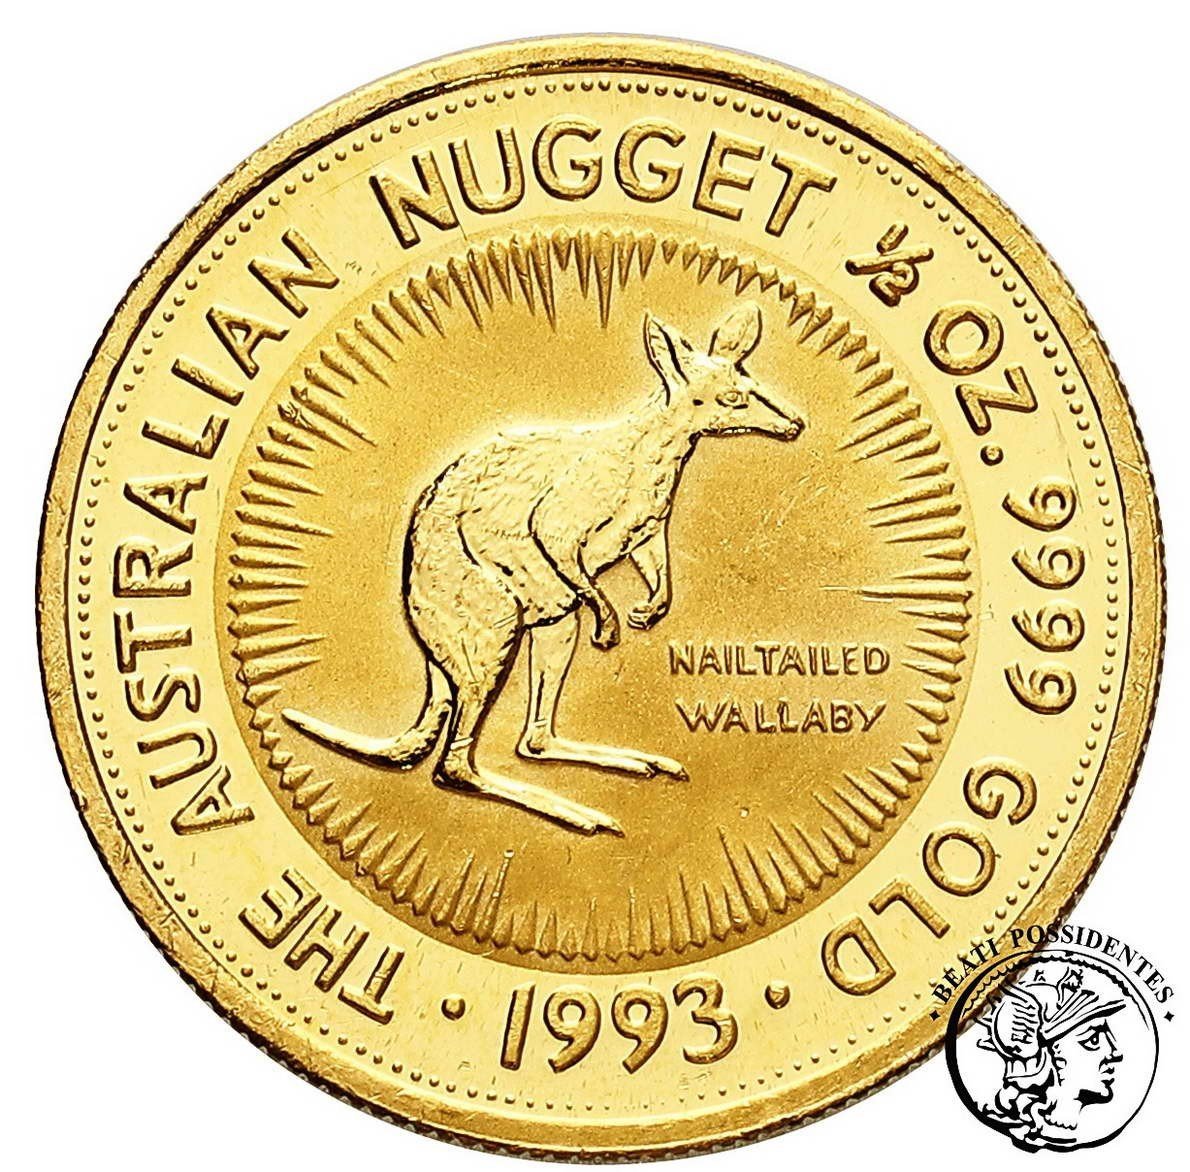 Australia 50 $ dolarów 1993 1/2 uncji złota st. L-